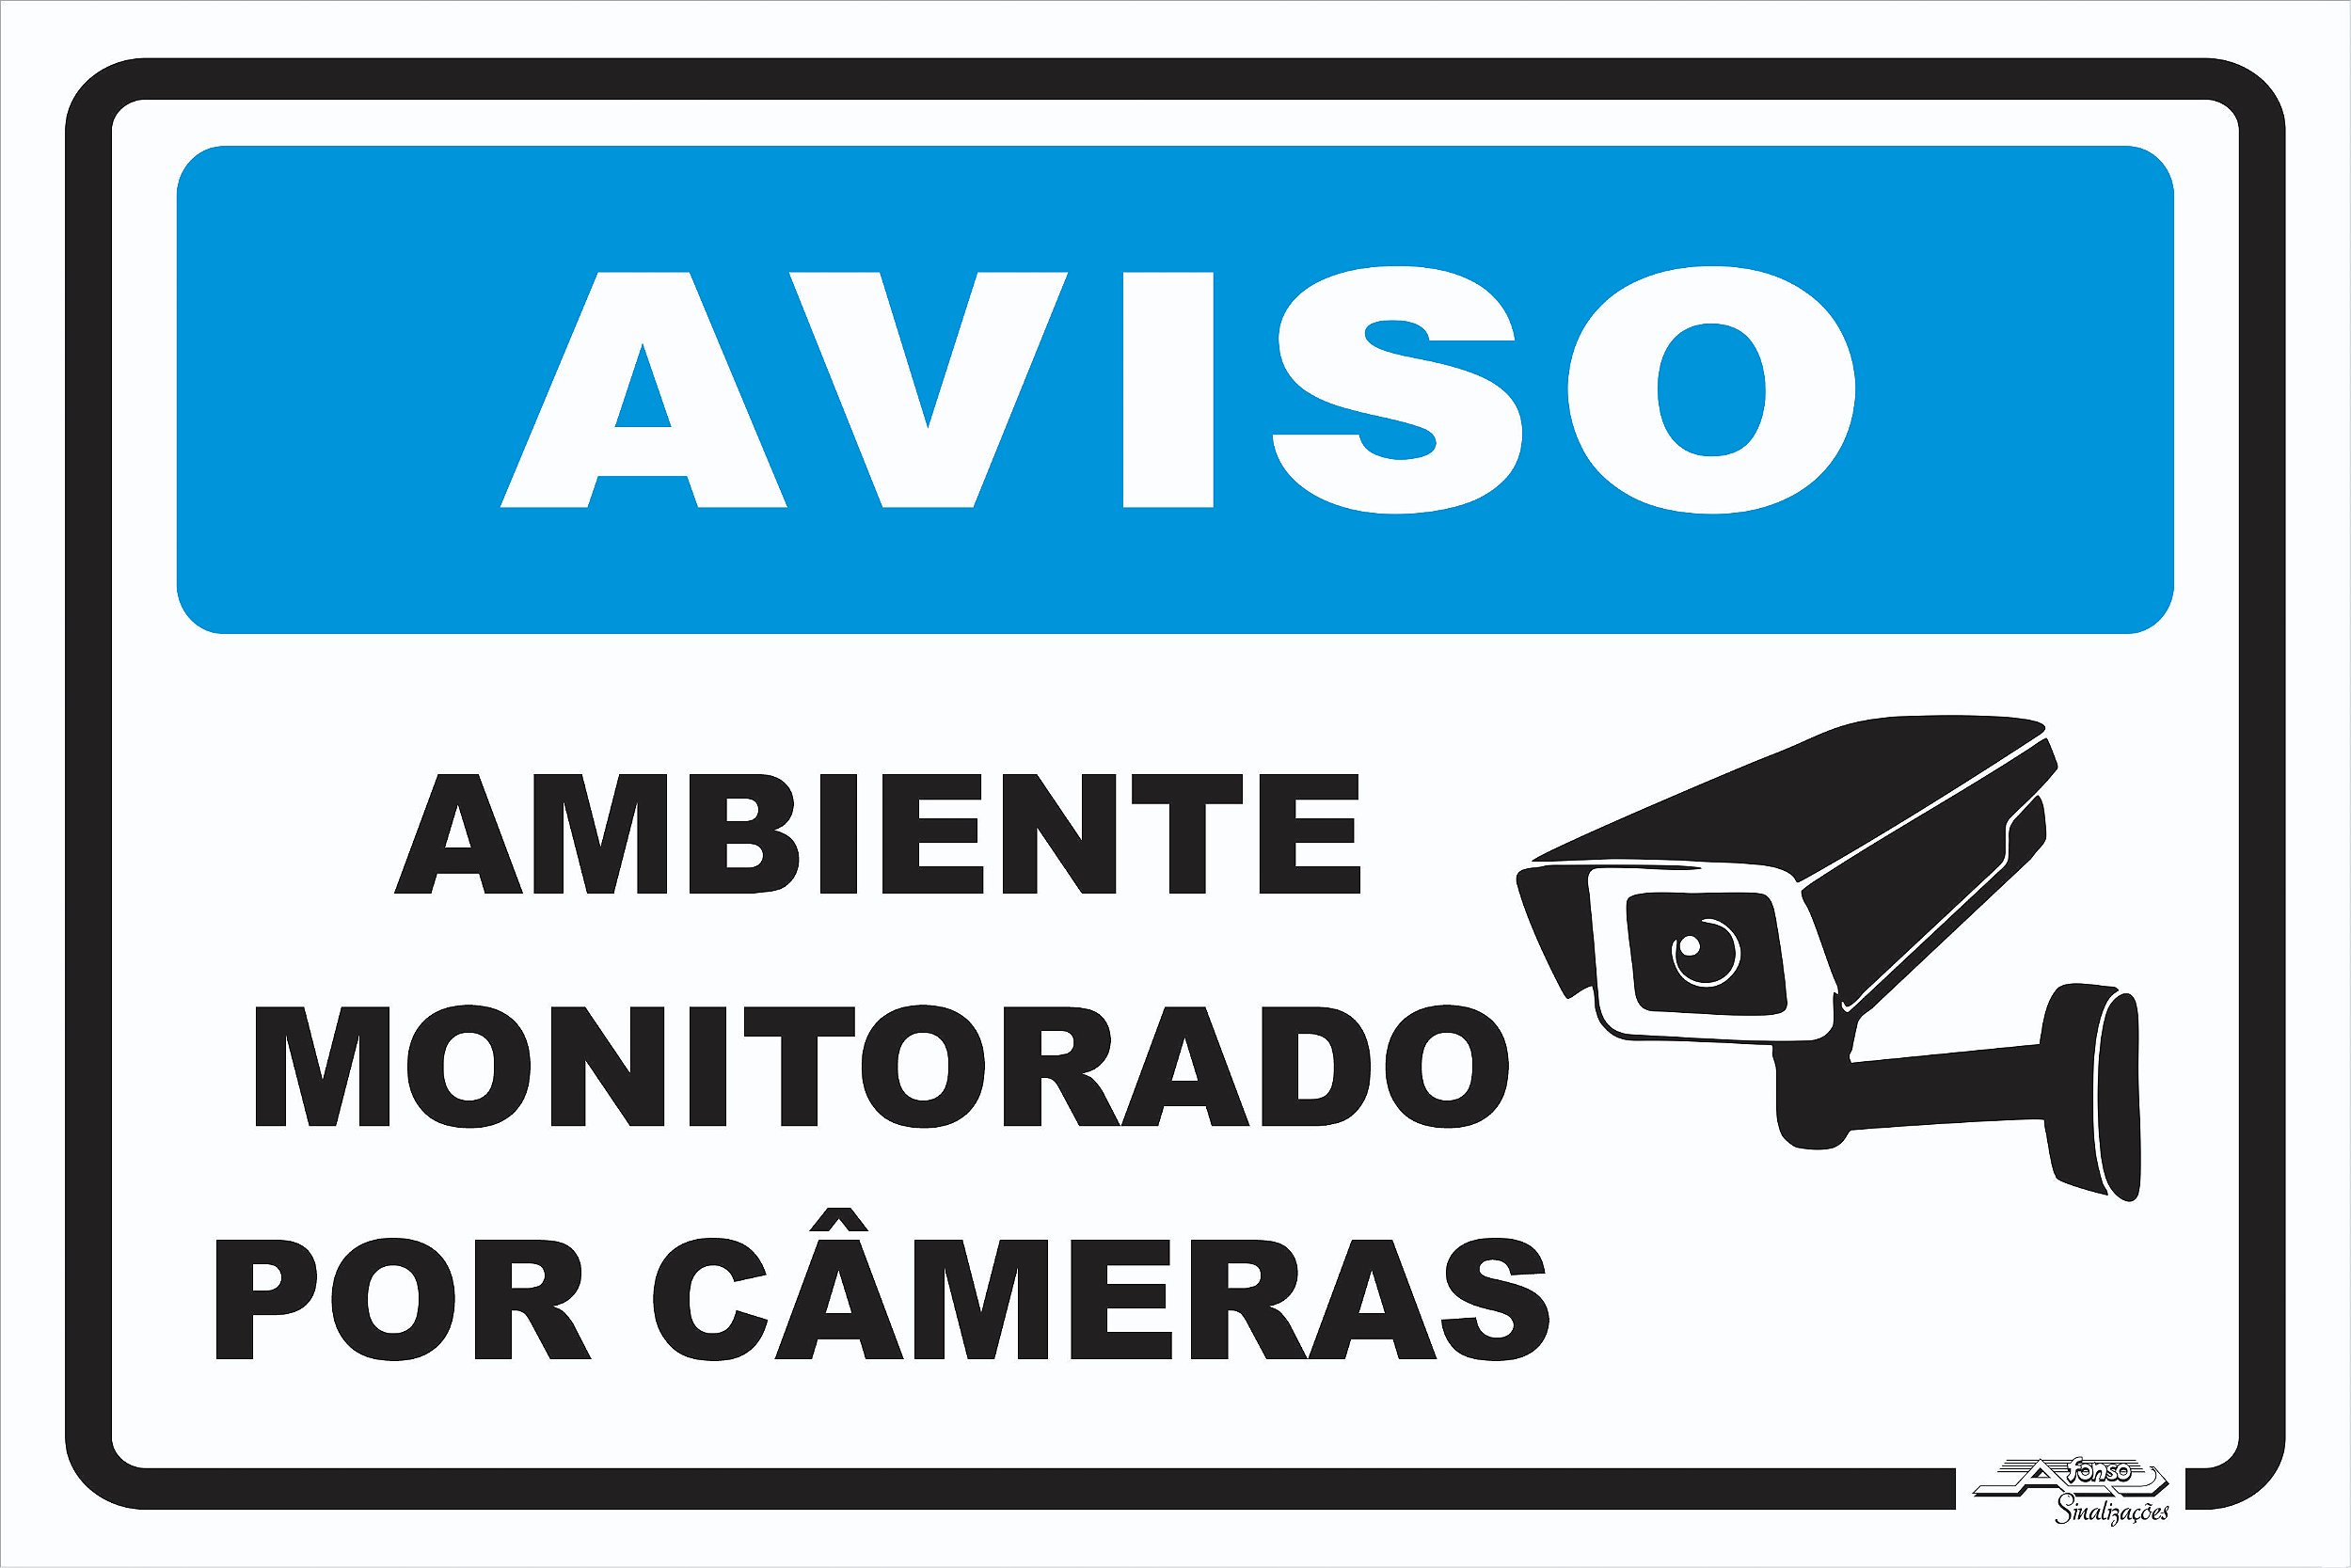 Placa Aviso Ambiente Monitorado por Câmeras - Afonso Adesivos